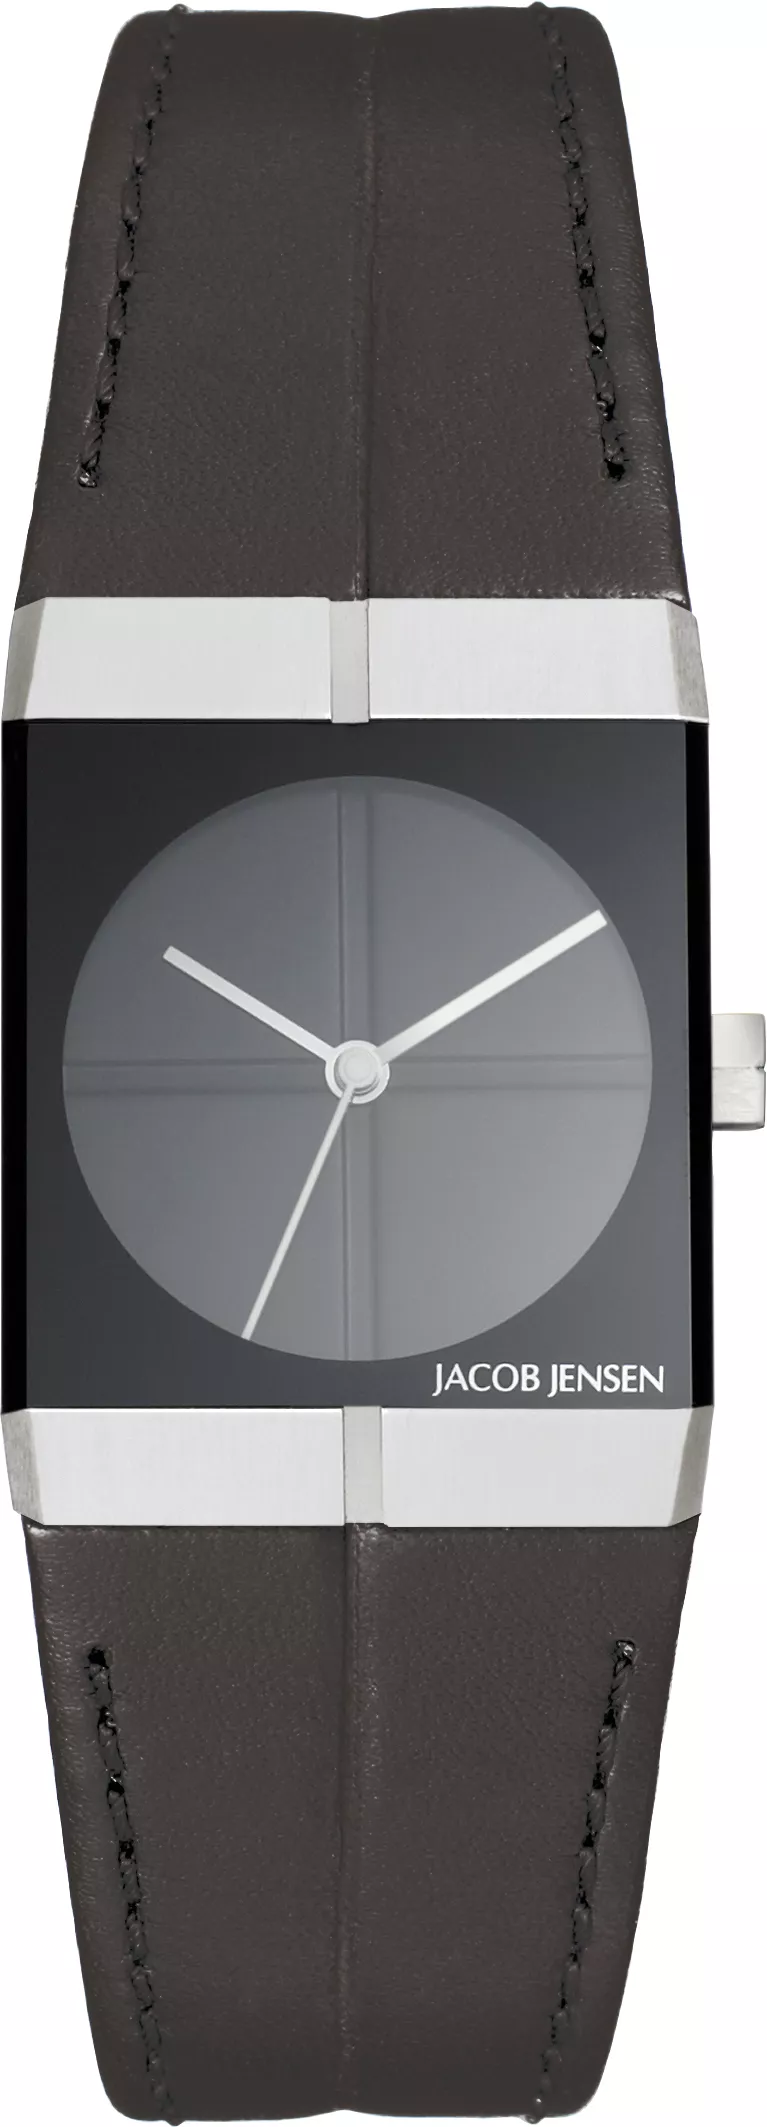 Jacob Jensen 240 Horloge icon saffierglas 22 mm